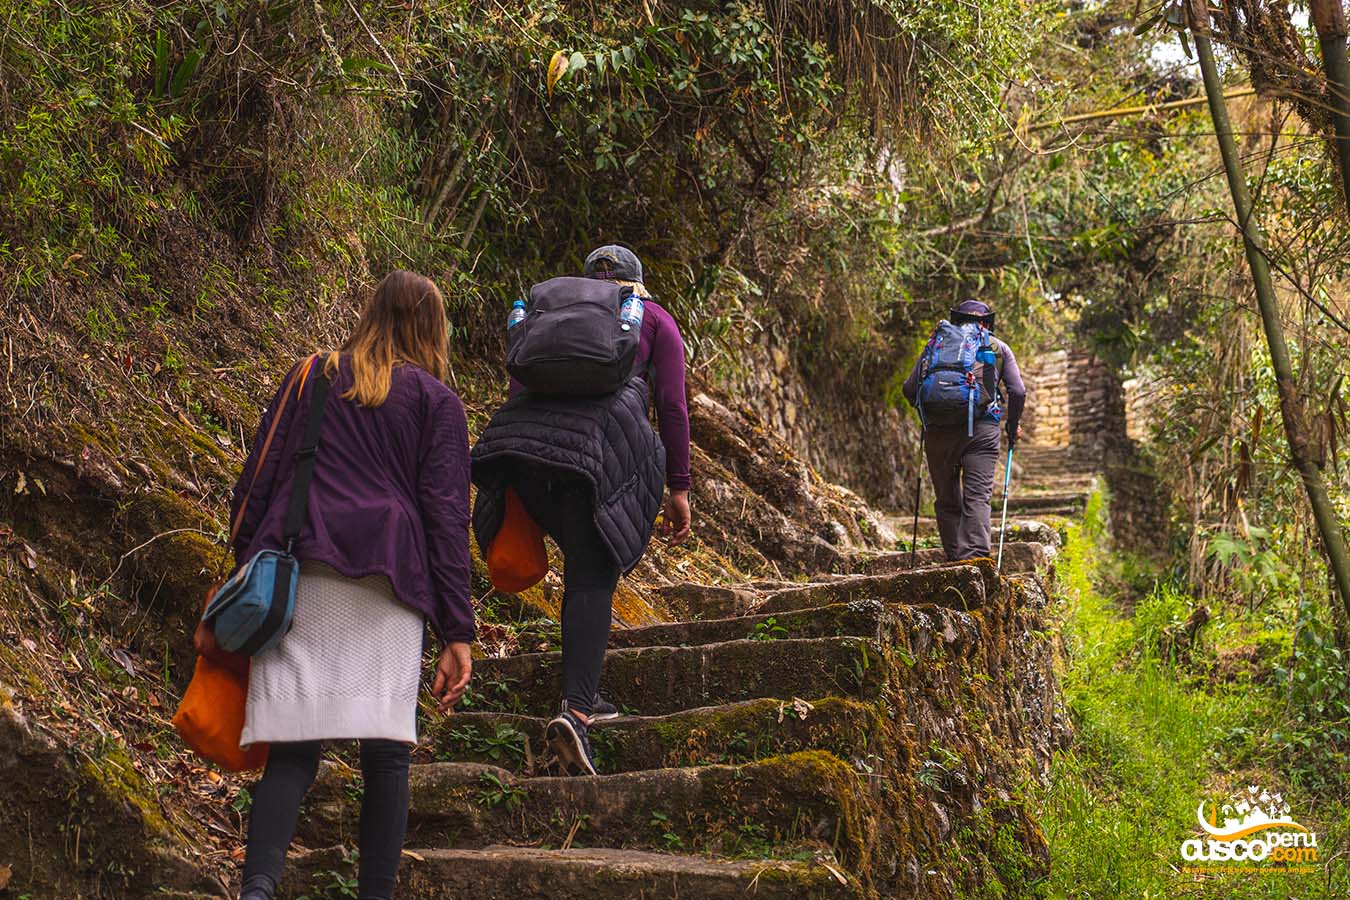 Inca Trail. Source: CuscoPeru.com